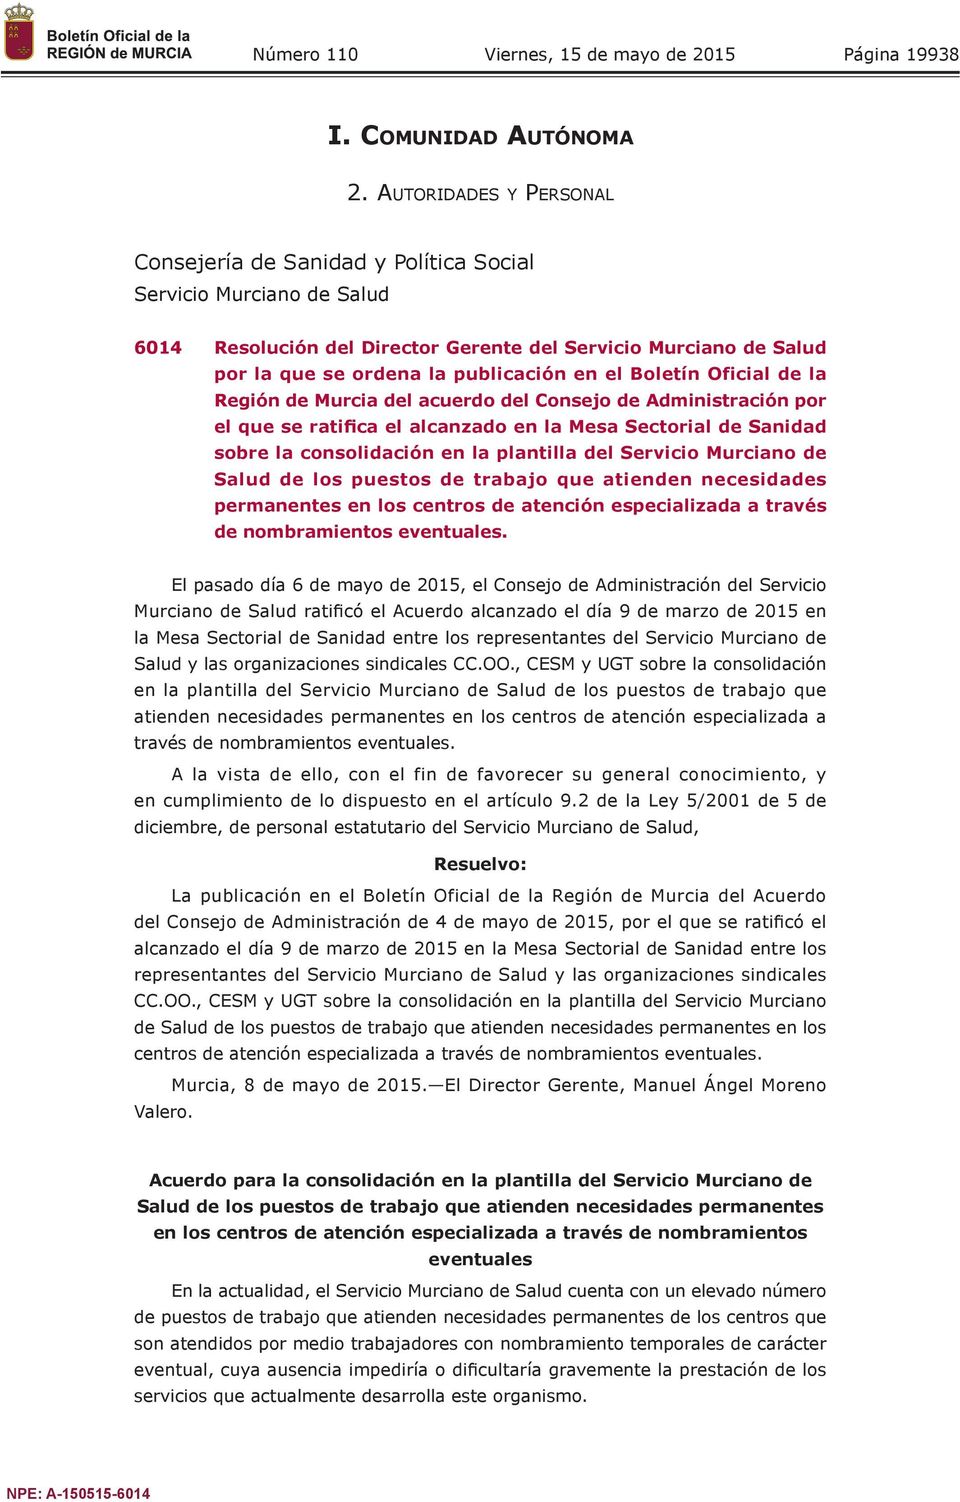 Boletín Oficial de la Región de Murcia del acuerdo del Consejo de Administración por el que se ratifica el alcanzado en la Mesa Sectorial de Sanidad sobre la consolidación en la plantilla del